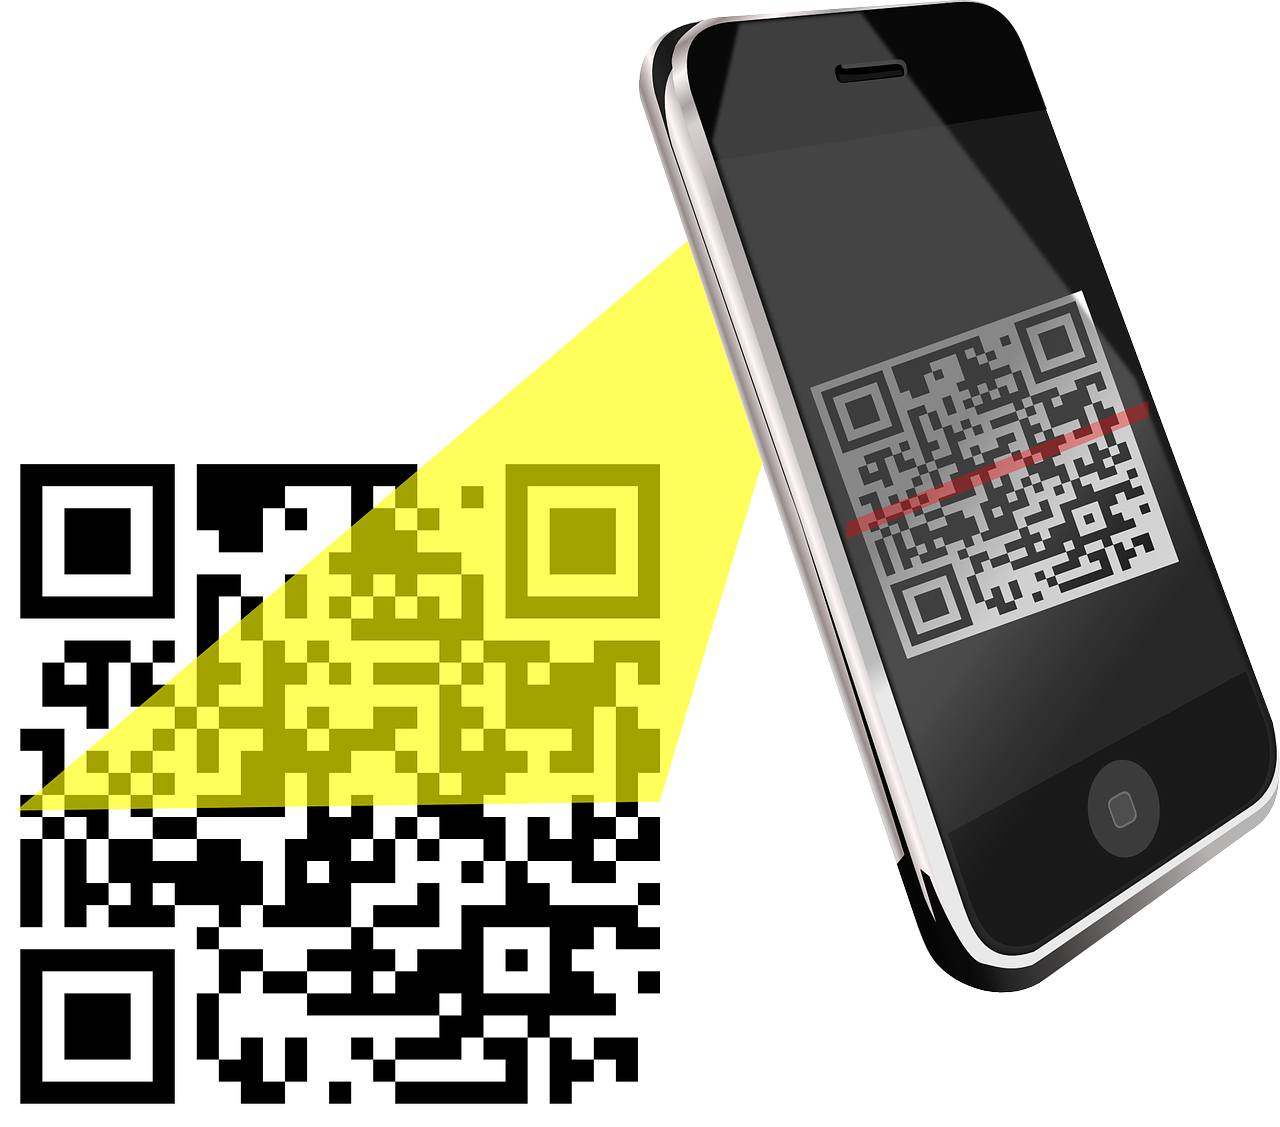 QR код. Смартфон QR код. Сканировать QR код. Иллюстрация смартфона с QR кодом. Мини qr код